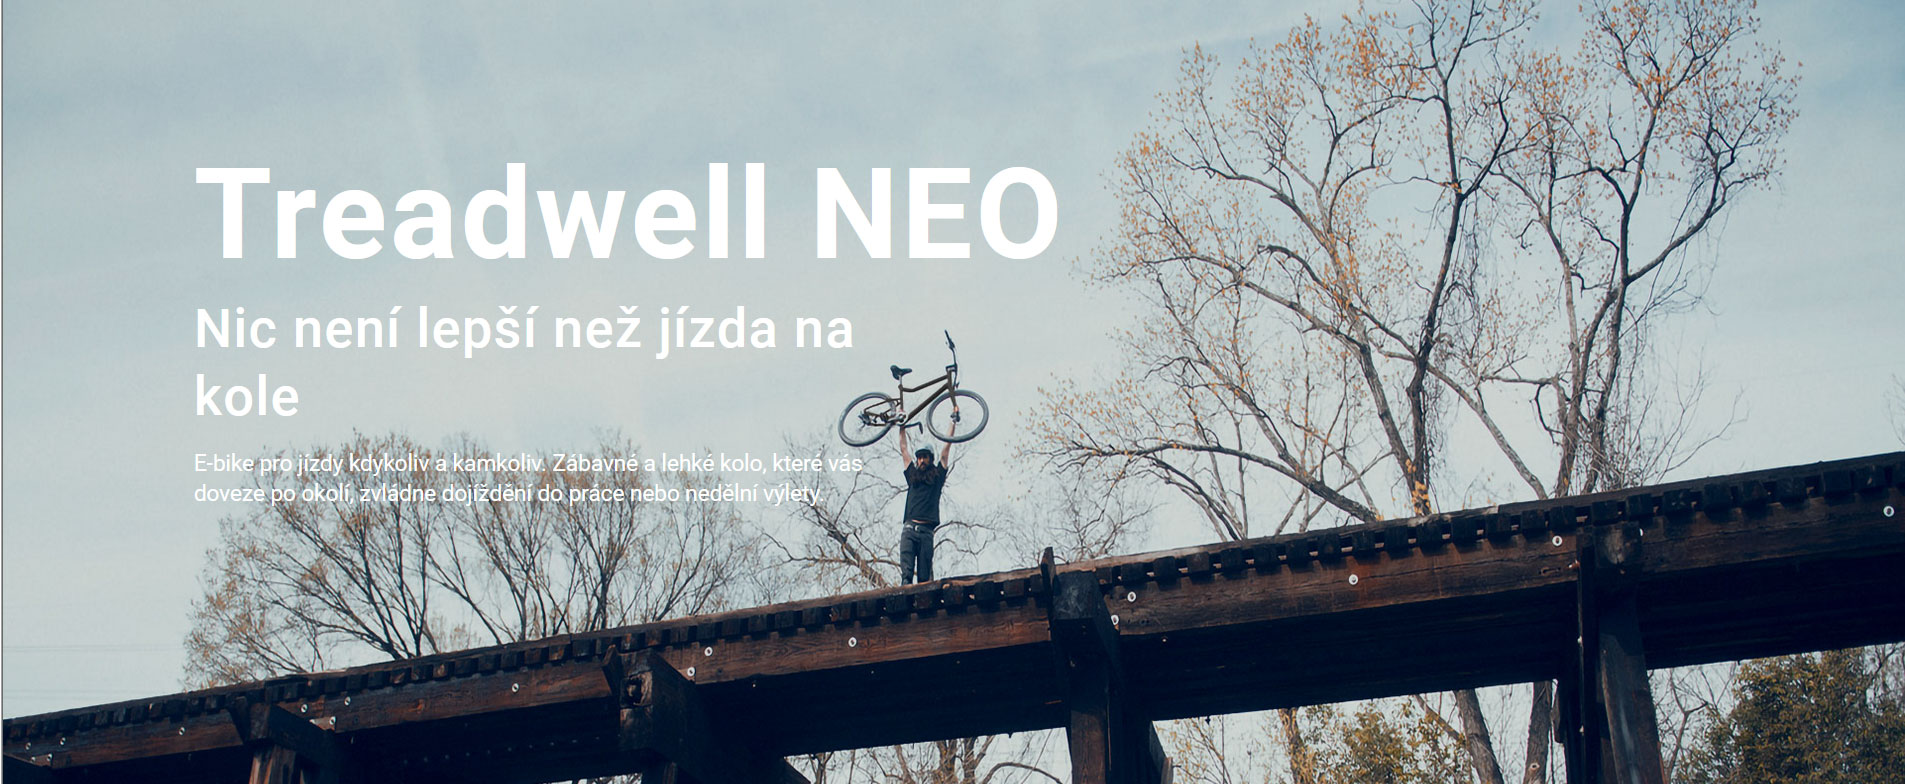 treadwell-neo